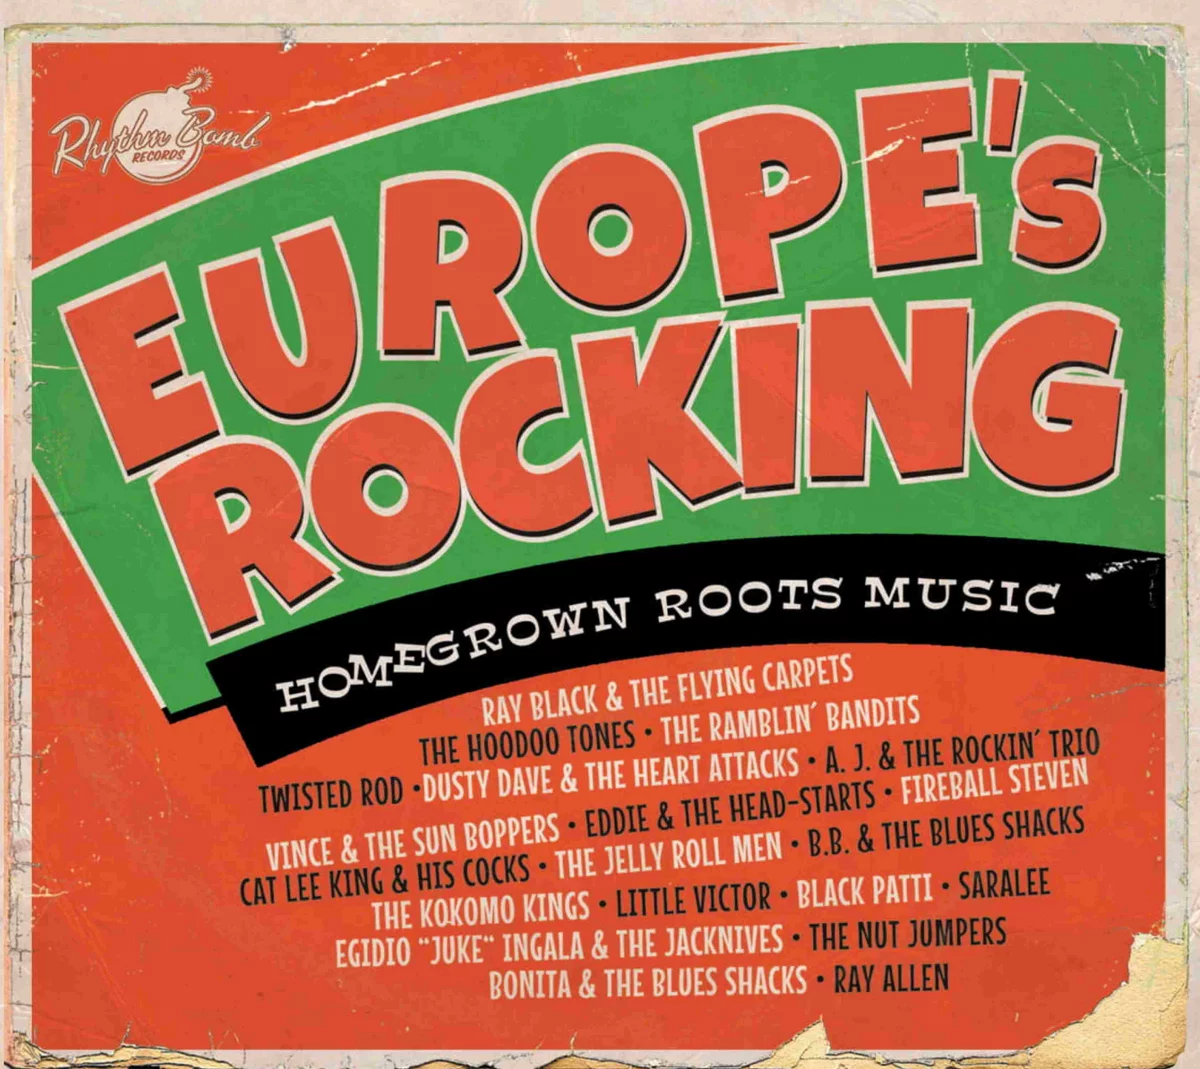 Europe's Rocking CD